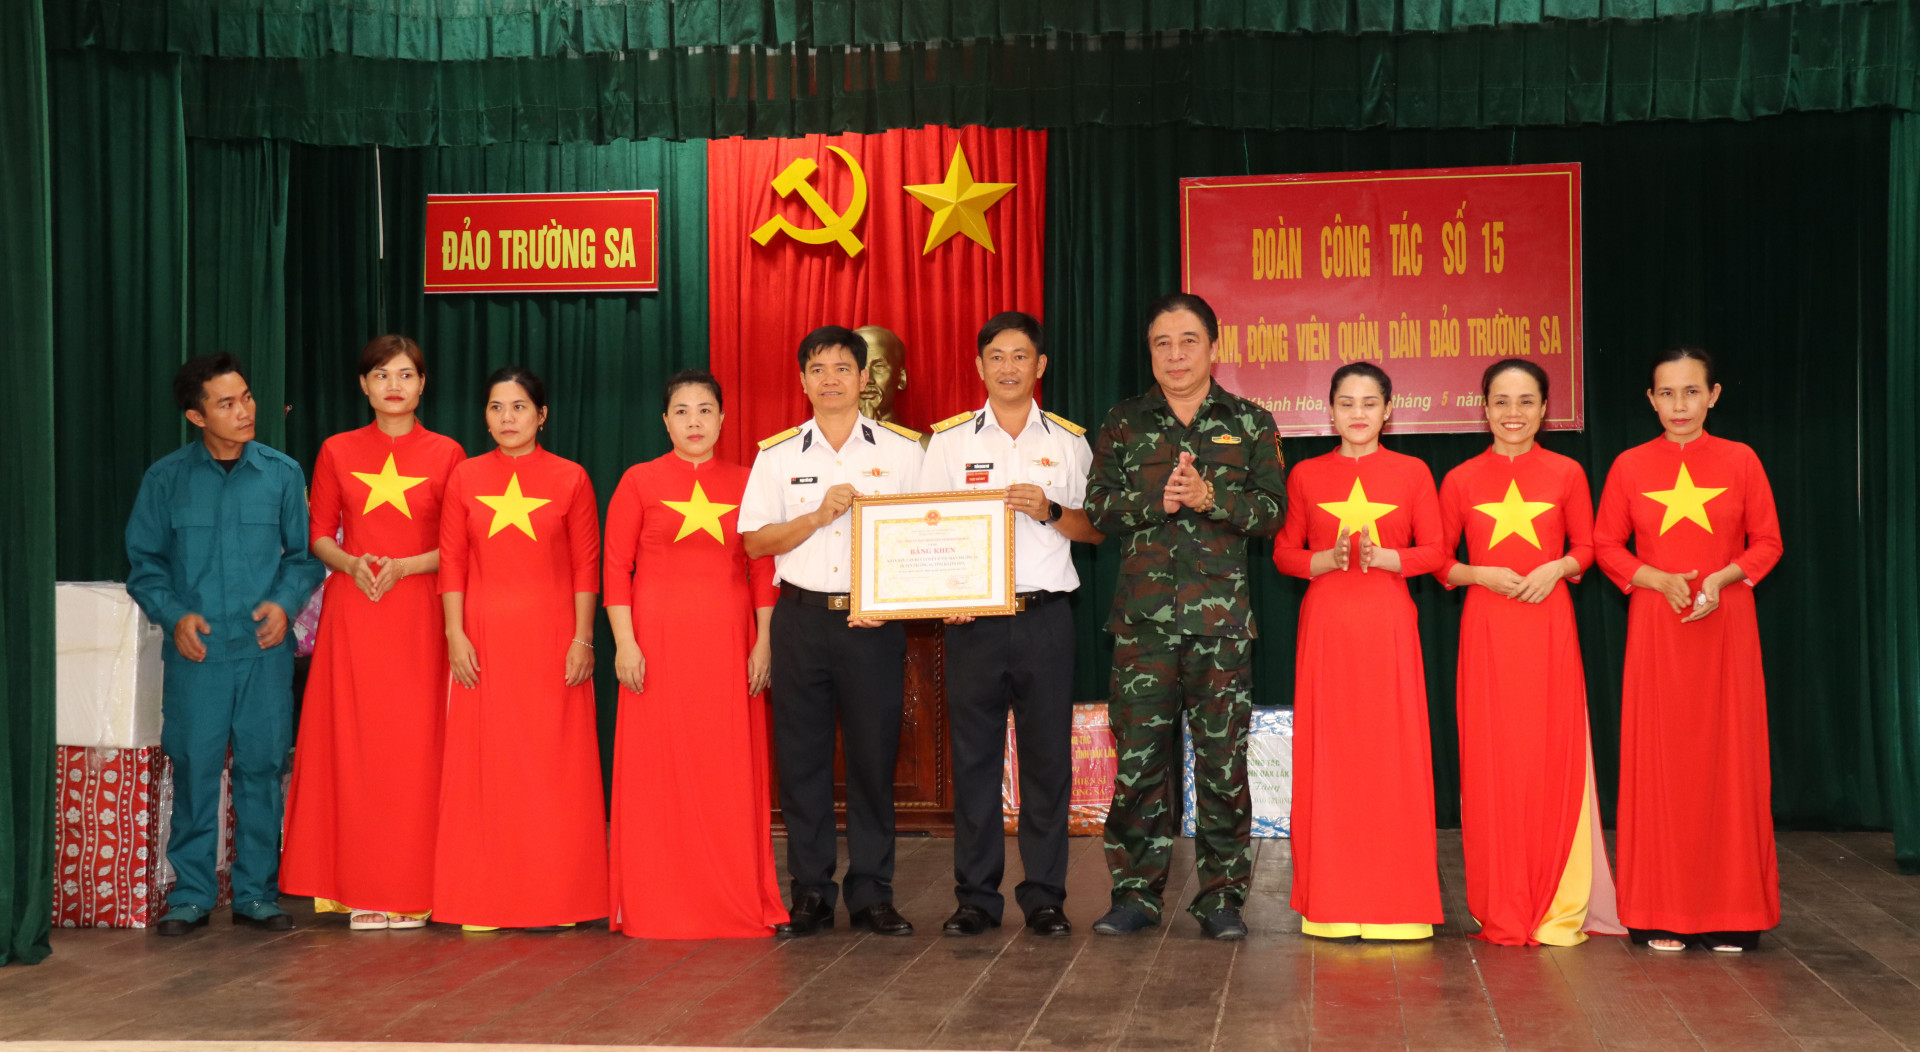 Đồng chí Nguyễn Khắc Toàn trao Bằng khen của UBND tỉnh cho nhân dân, cán bộ và chiến sỹ thị trấn Trường Sa